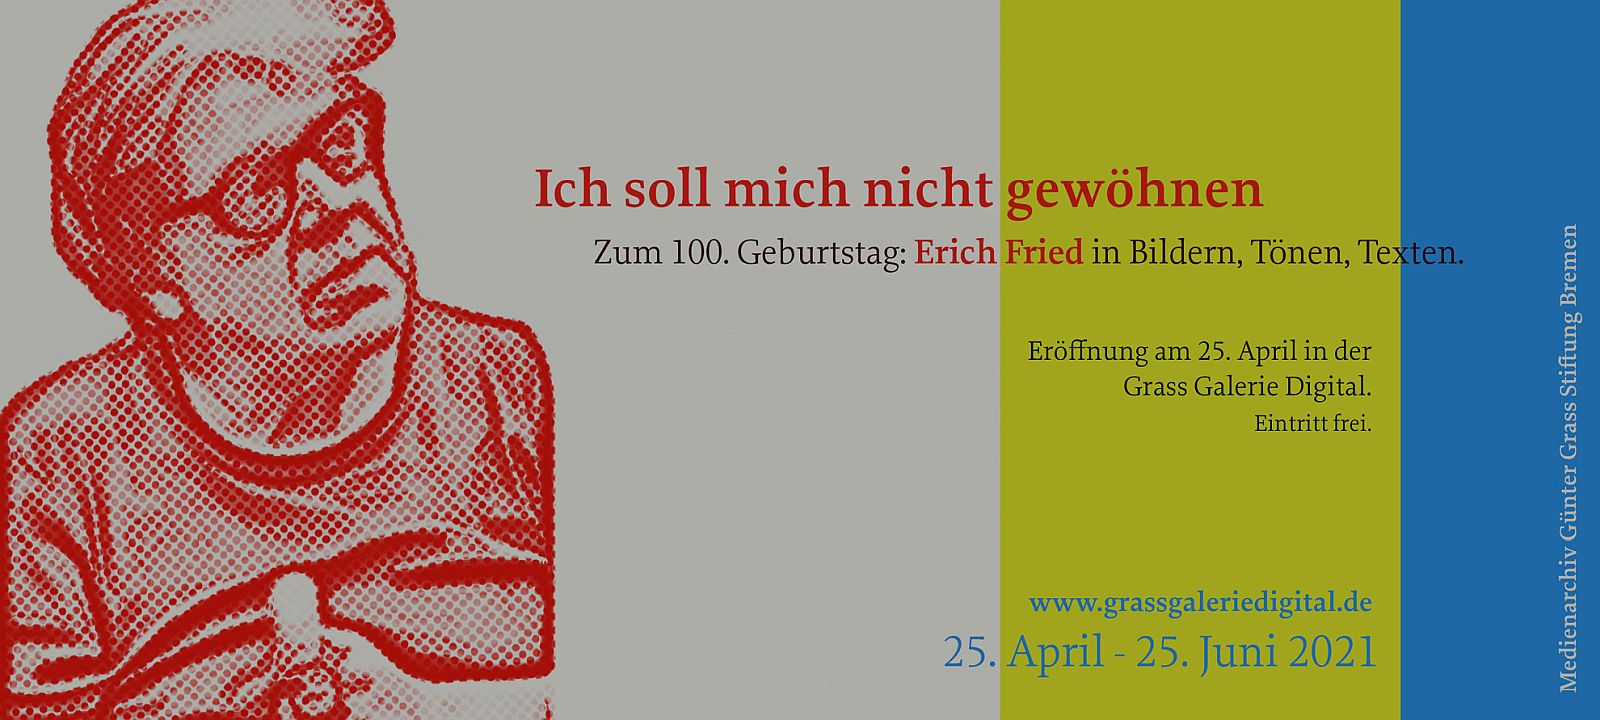 Banner zur digitalen Ausstellung zum 100. Geburtstag von Erich Fried in der Grass Galerie Digital 